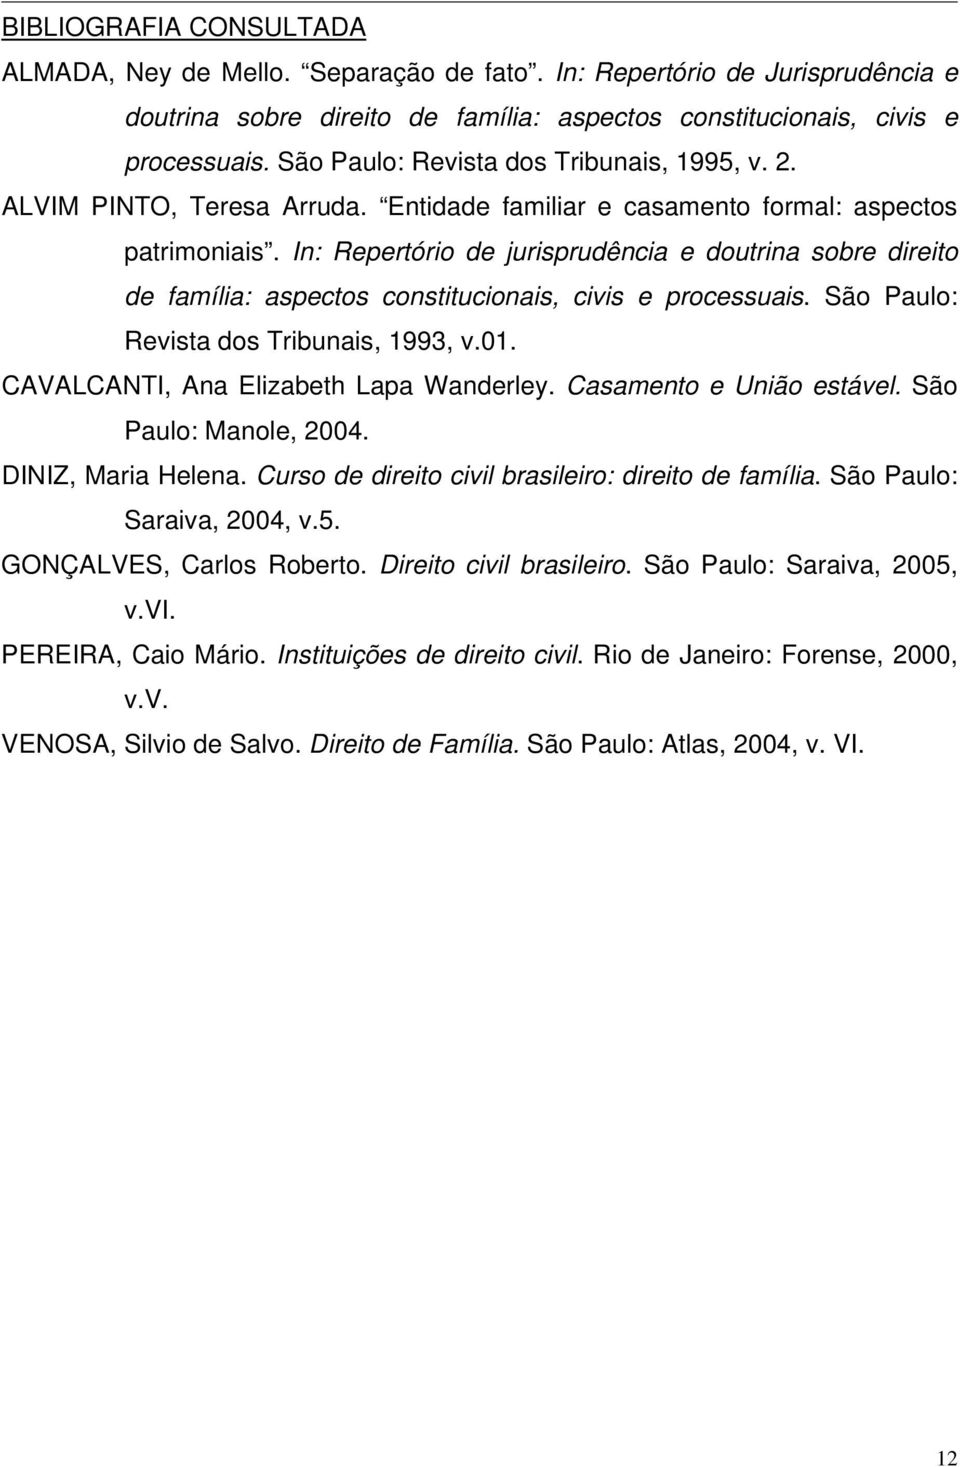 In: Repertório de jurisprudência e doutrina sobre direito de família: aspectos constitucionais, civis e processuais. São Paulo: Revista dos Tribunais, 1993, v.01.